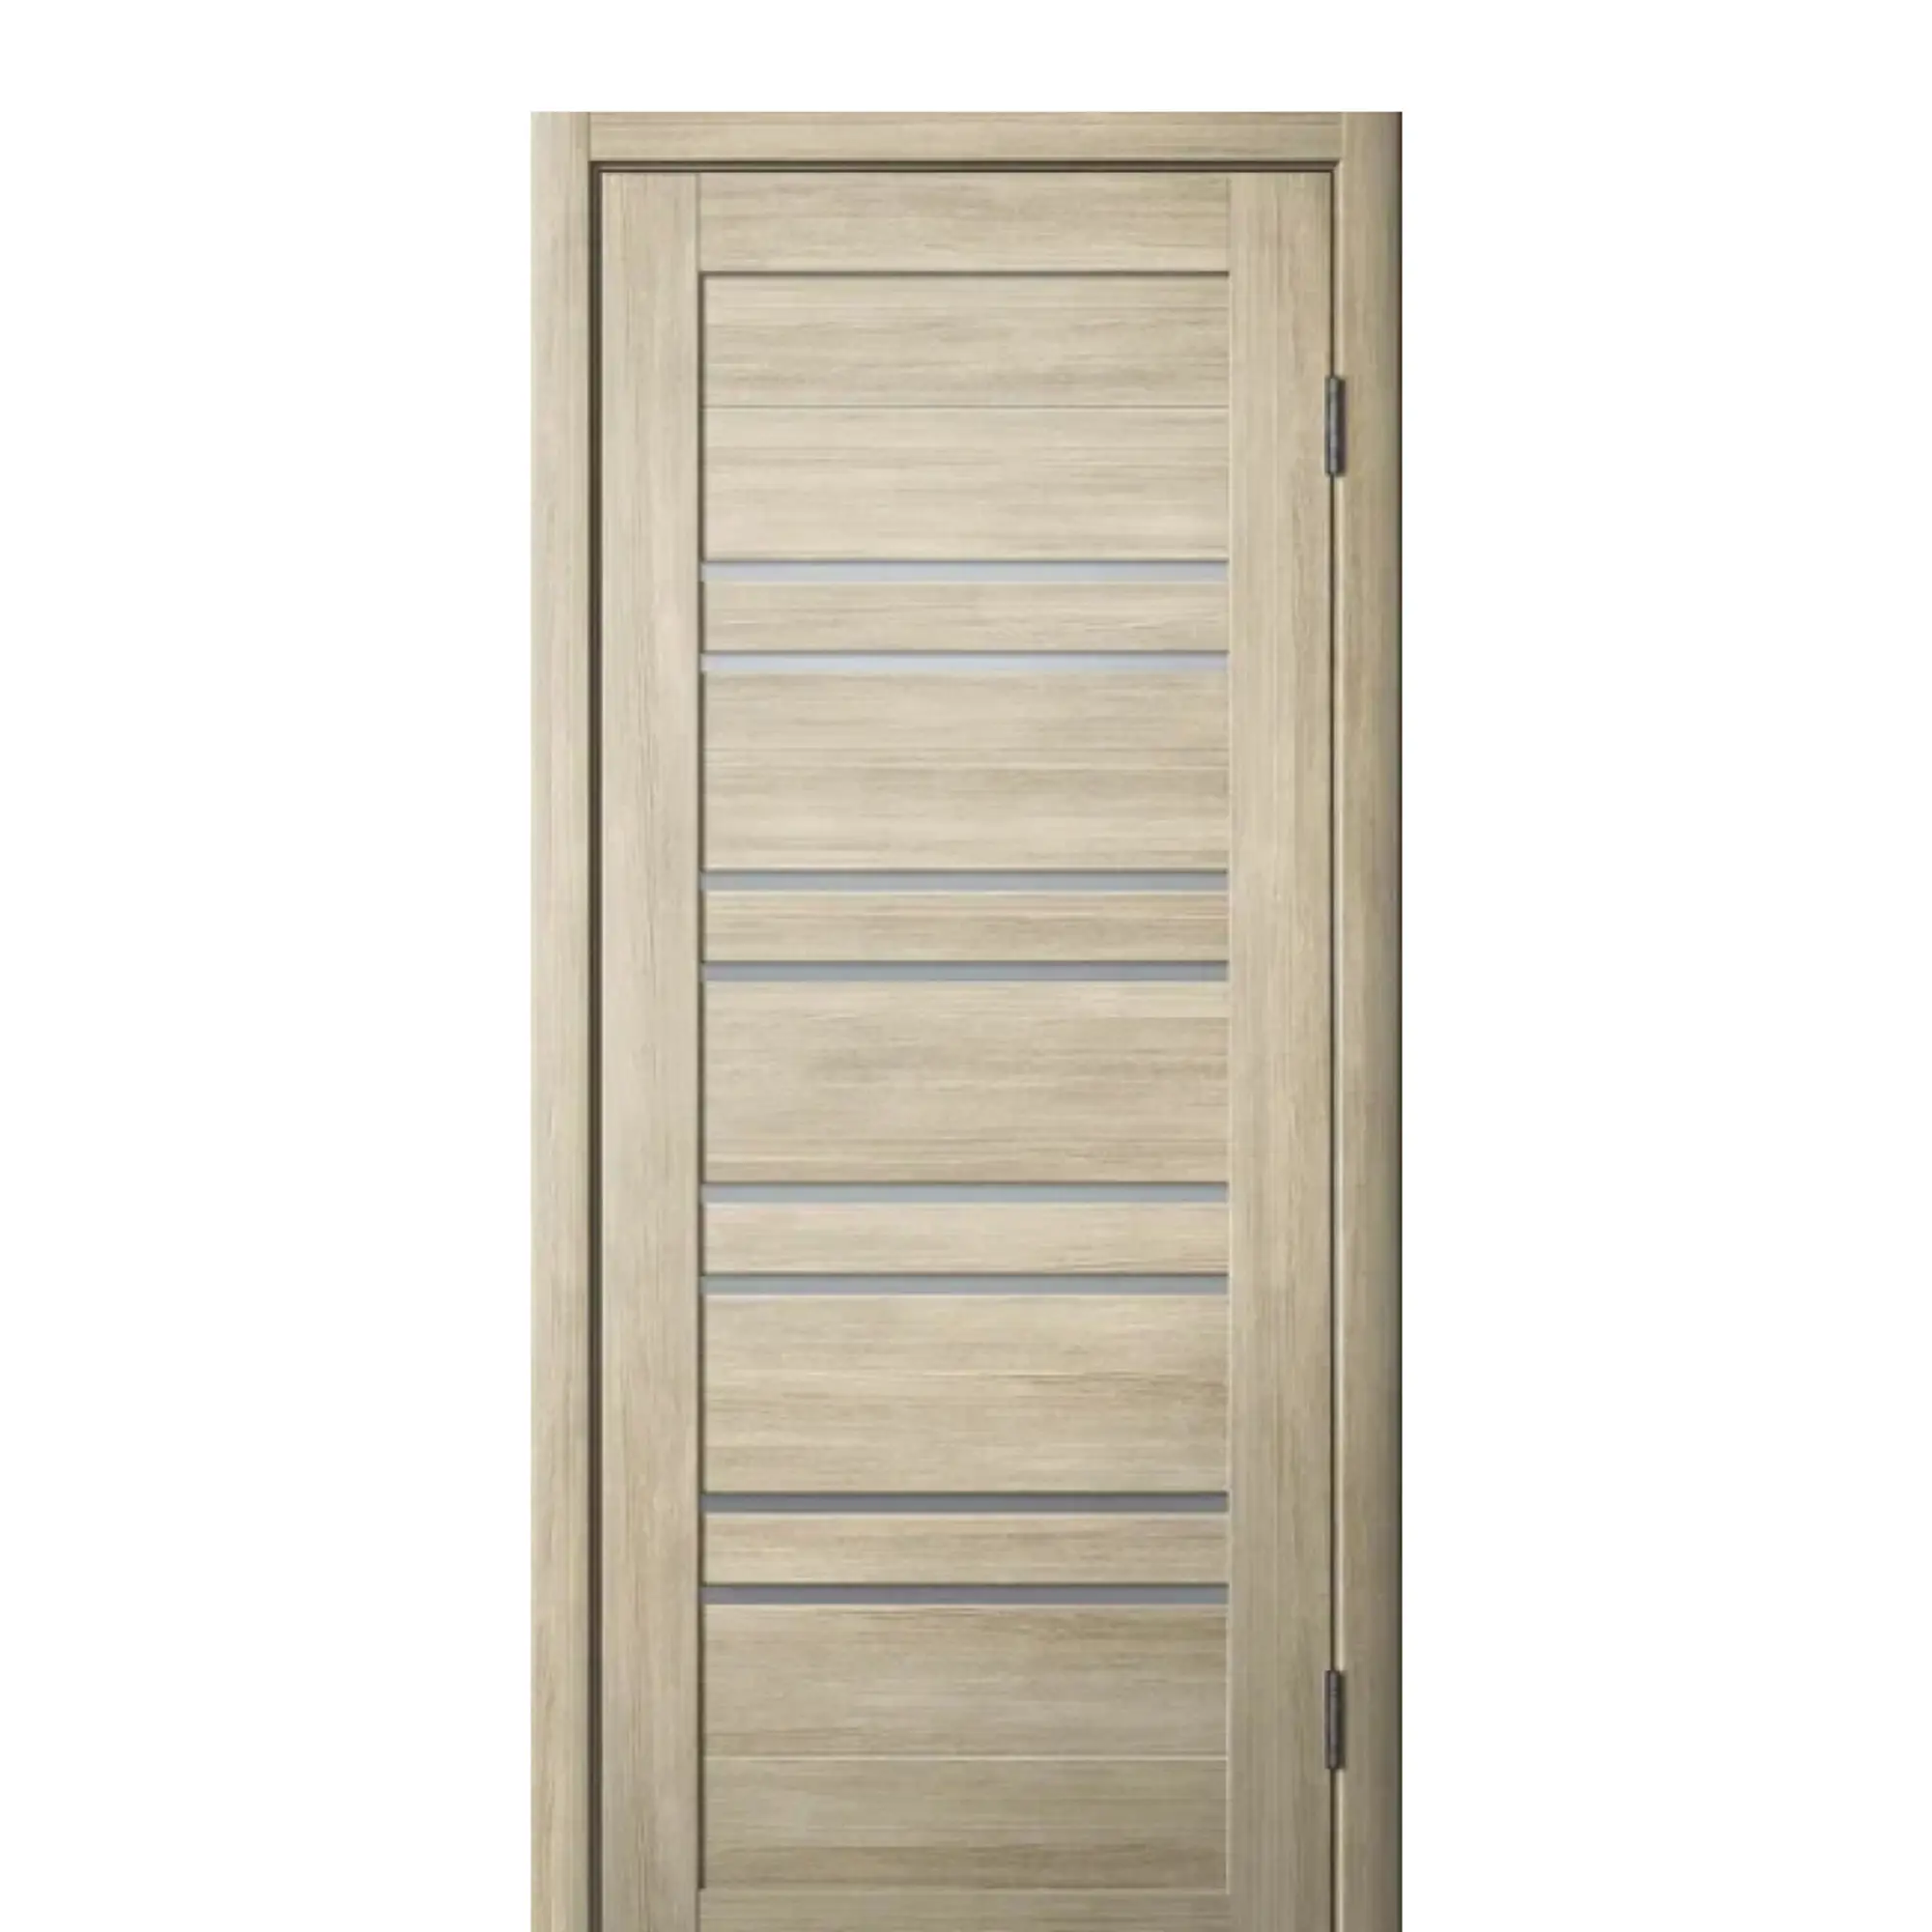 Межкомнатная дверь PAULINIDOR PD2670 в комплекте с фурнитурой в санузел, 800 х 200 латте